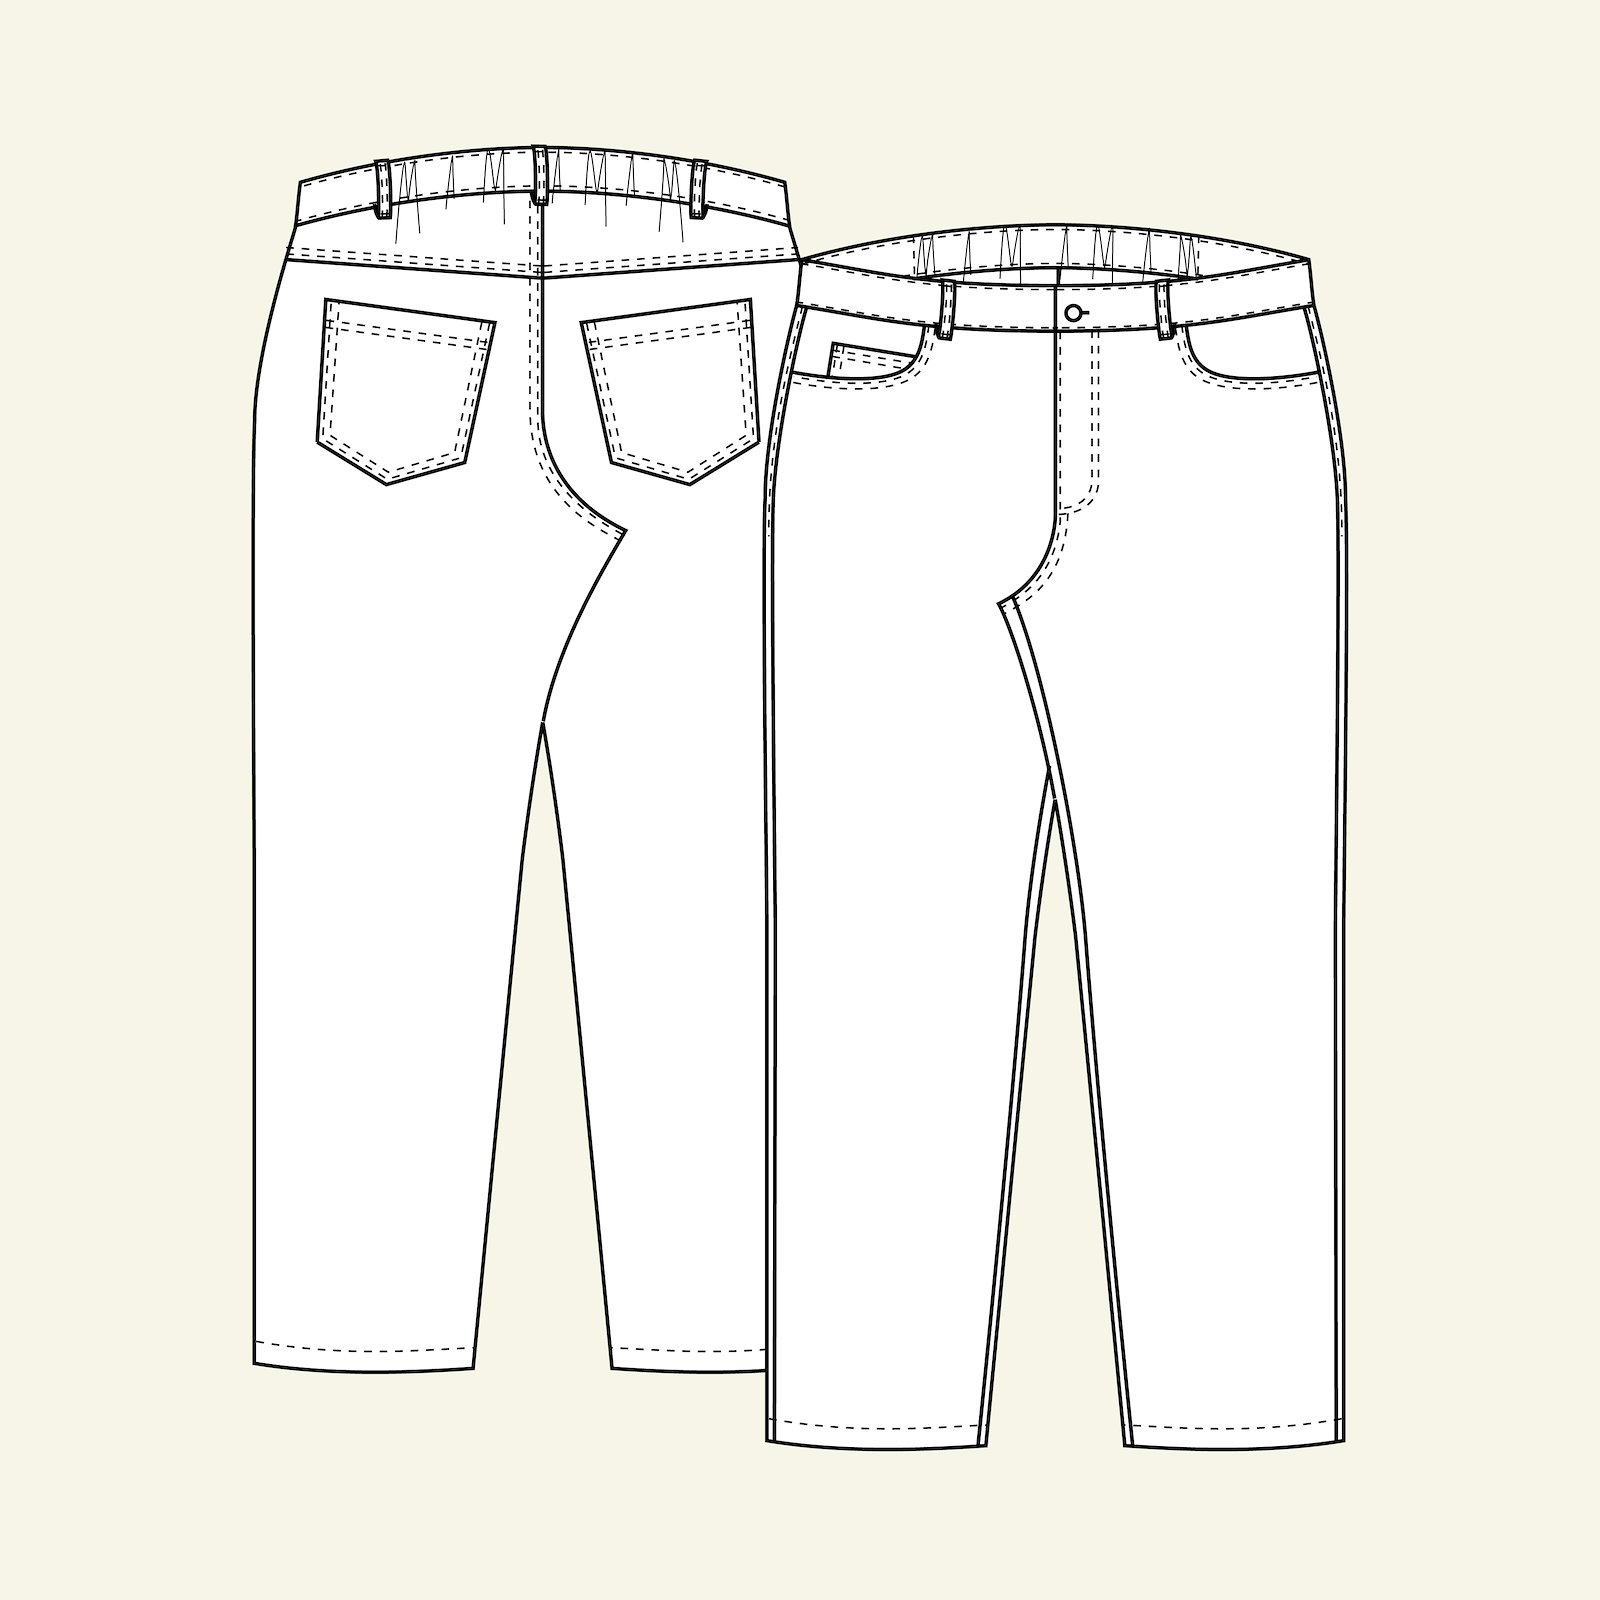 Klassisk jeans m/ strikk i linning b, 52 p70007000_p70007001_p70007002_p70007003_p70007004_pack_b